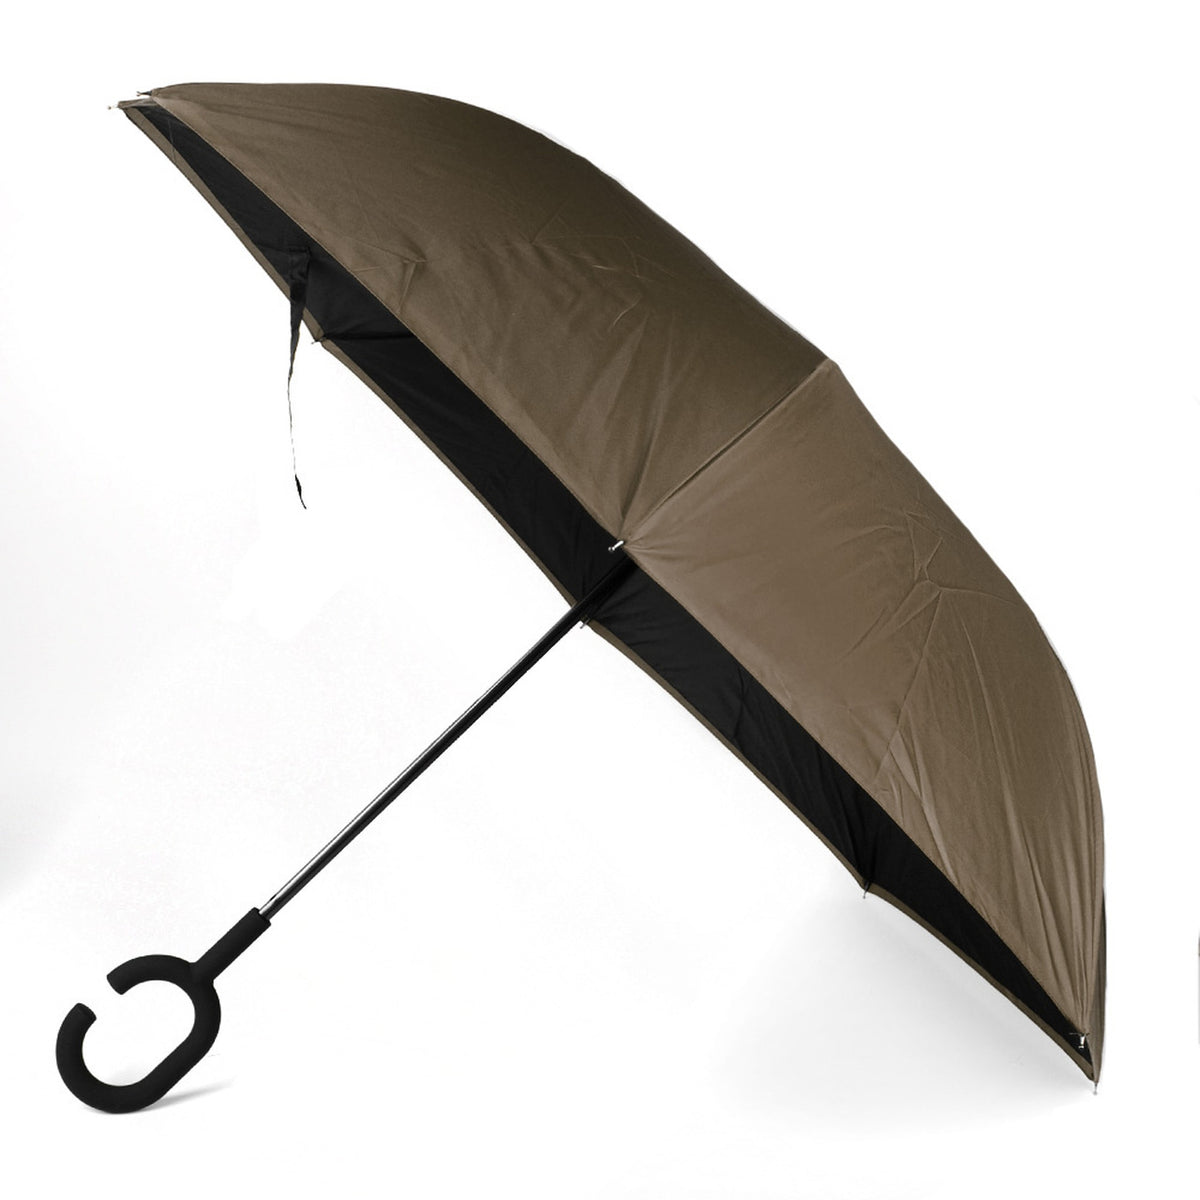 Selini Double Layer School Pride Inverted Umbrella - Brown / Black